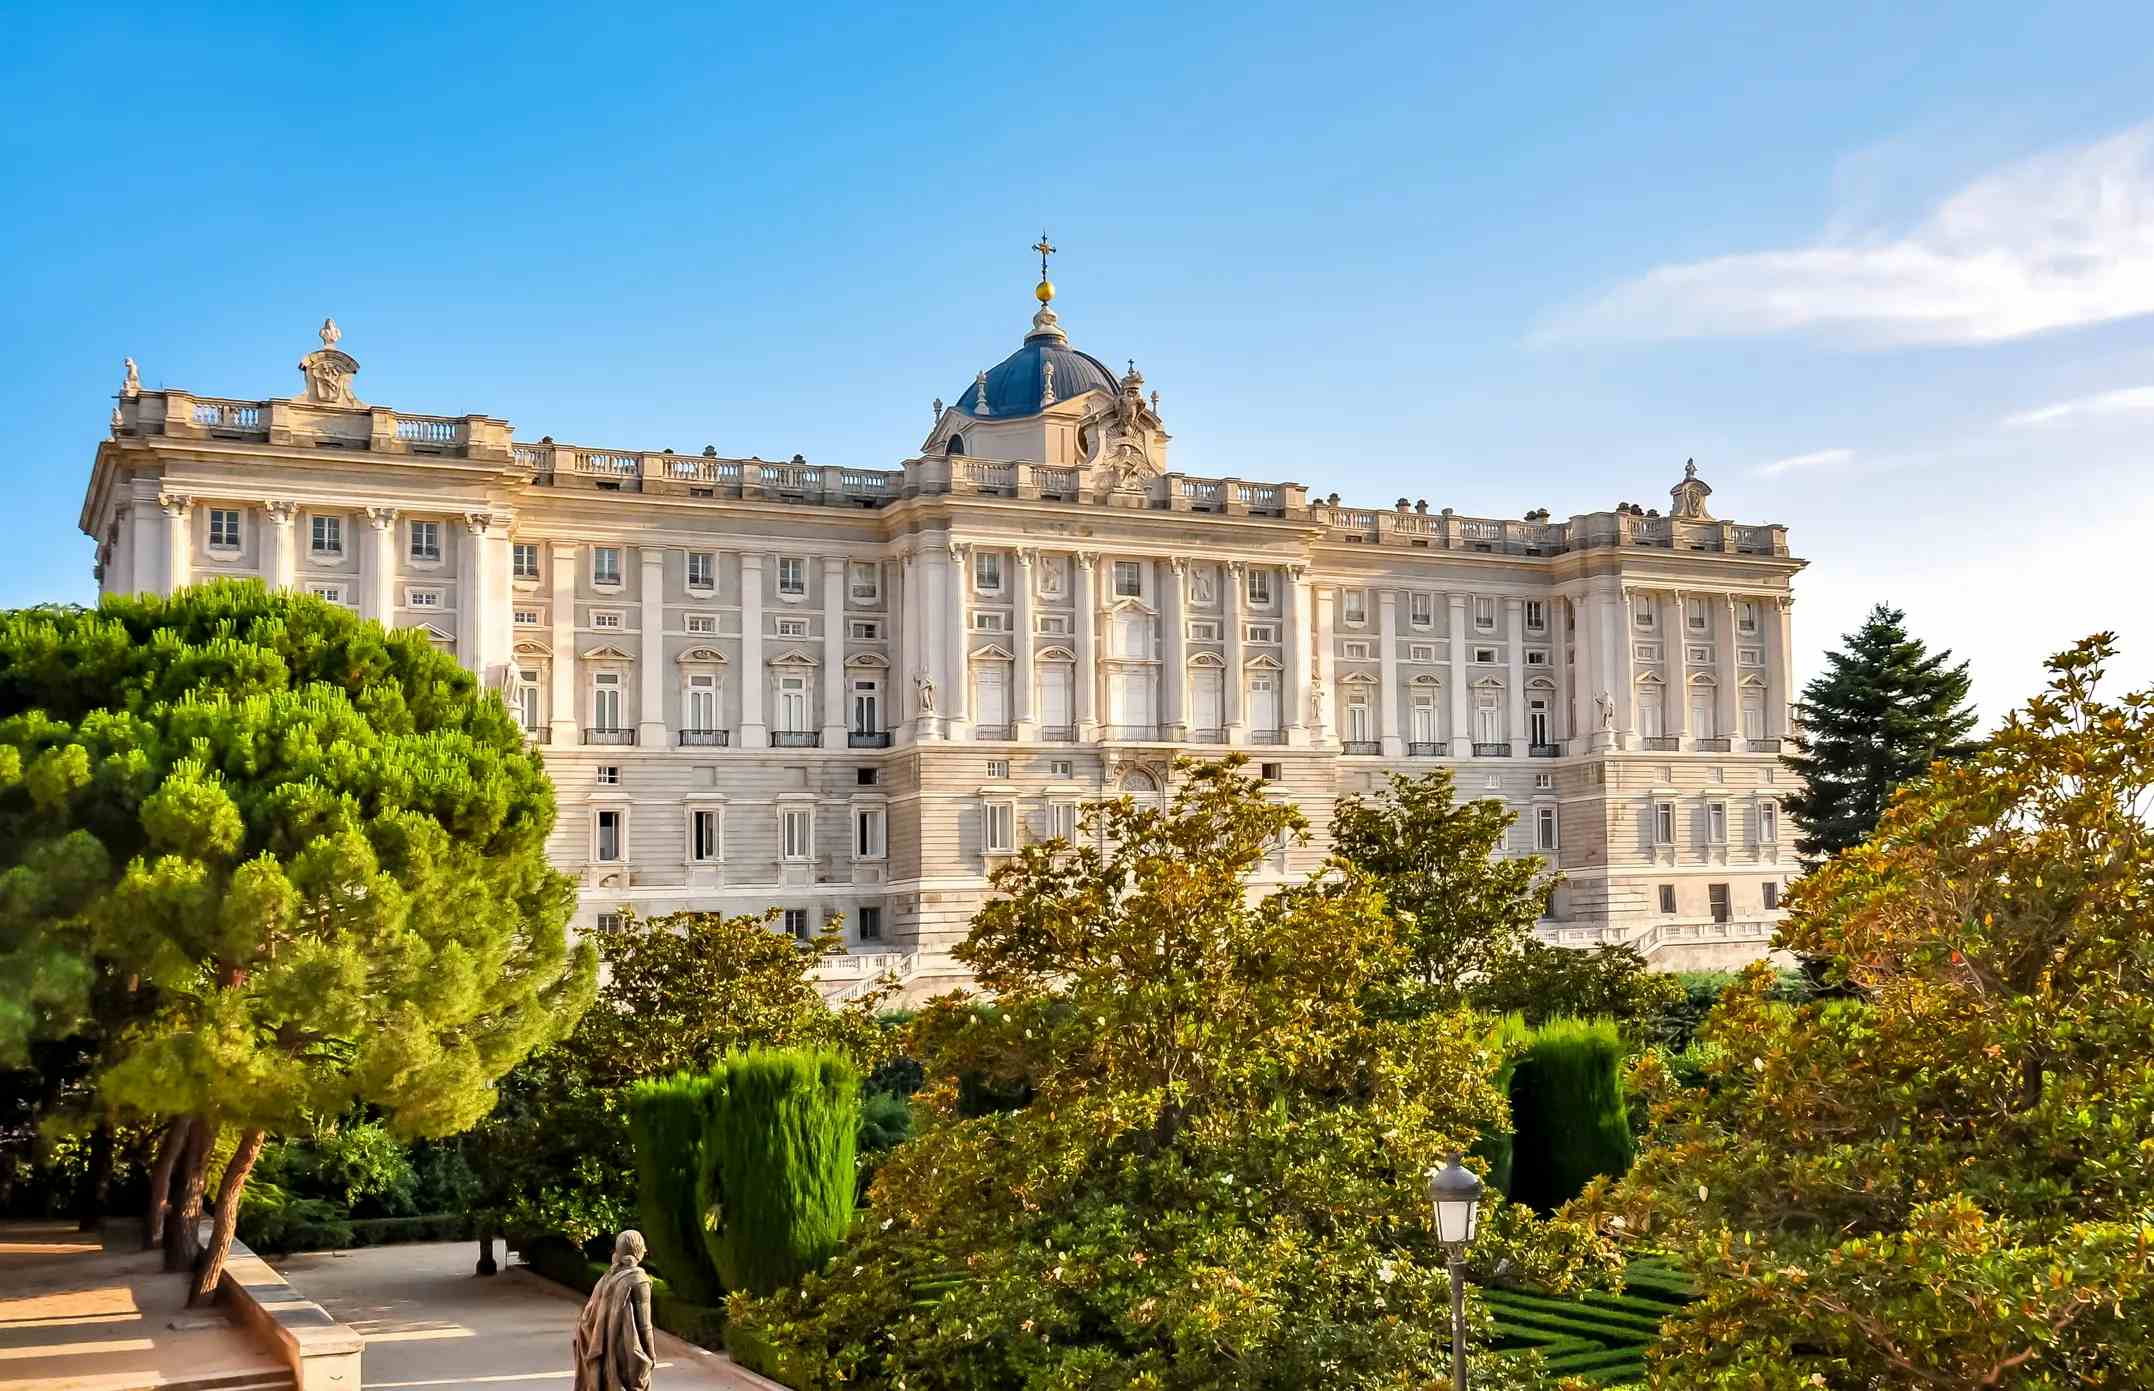 Palacio Real de Madrid image